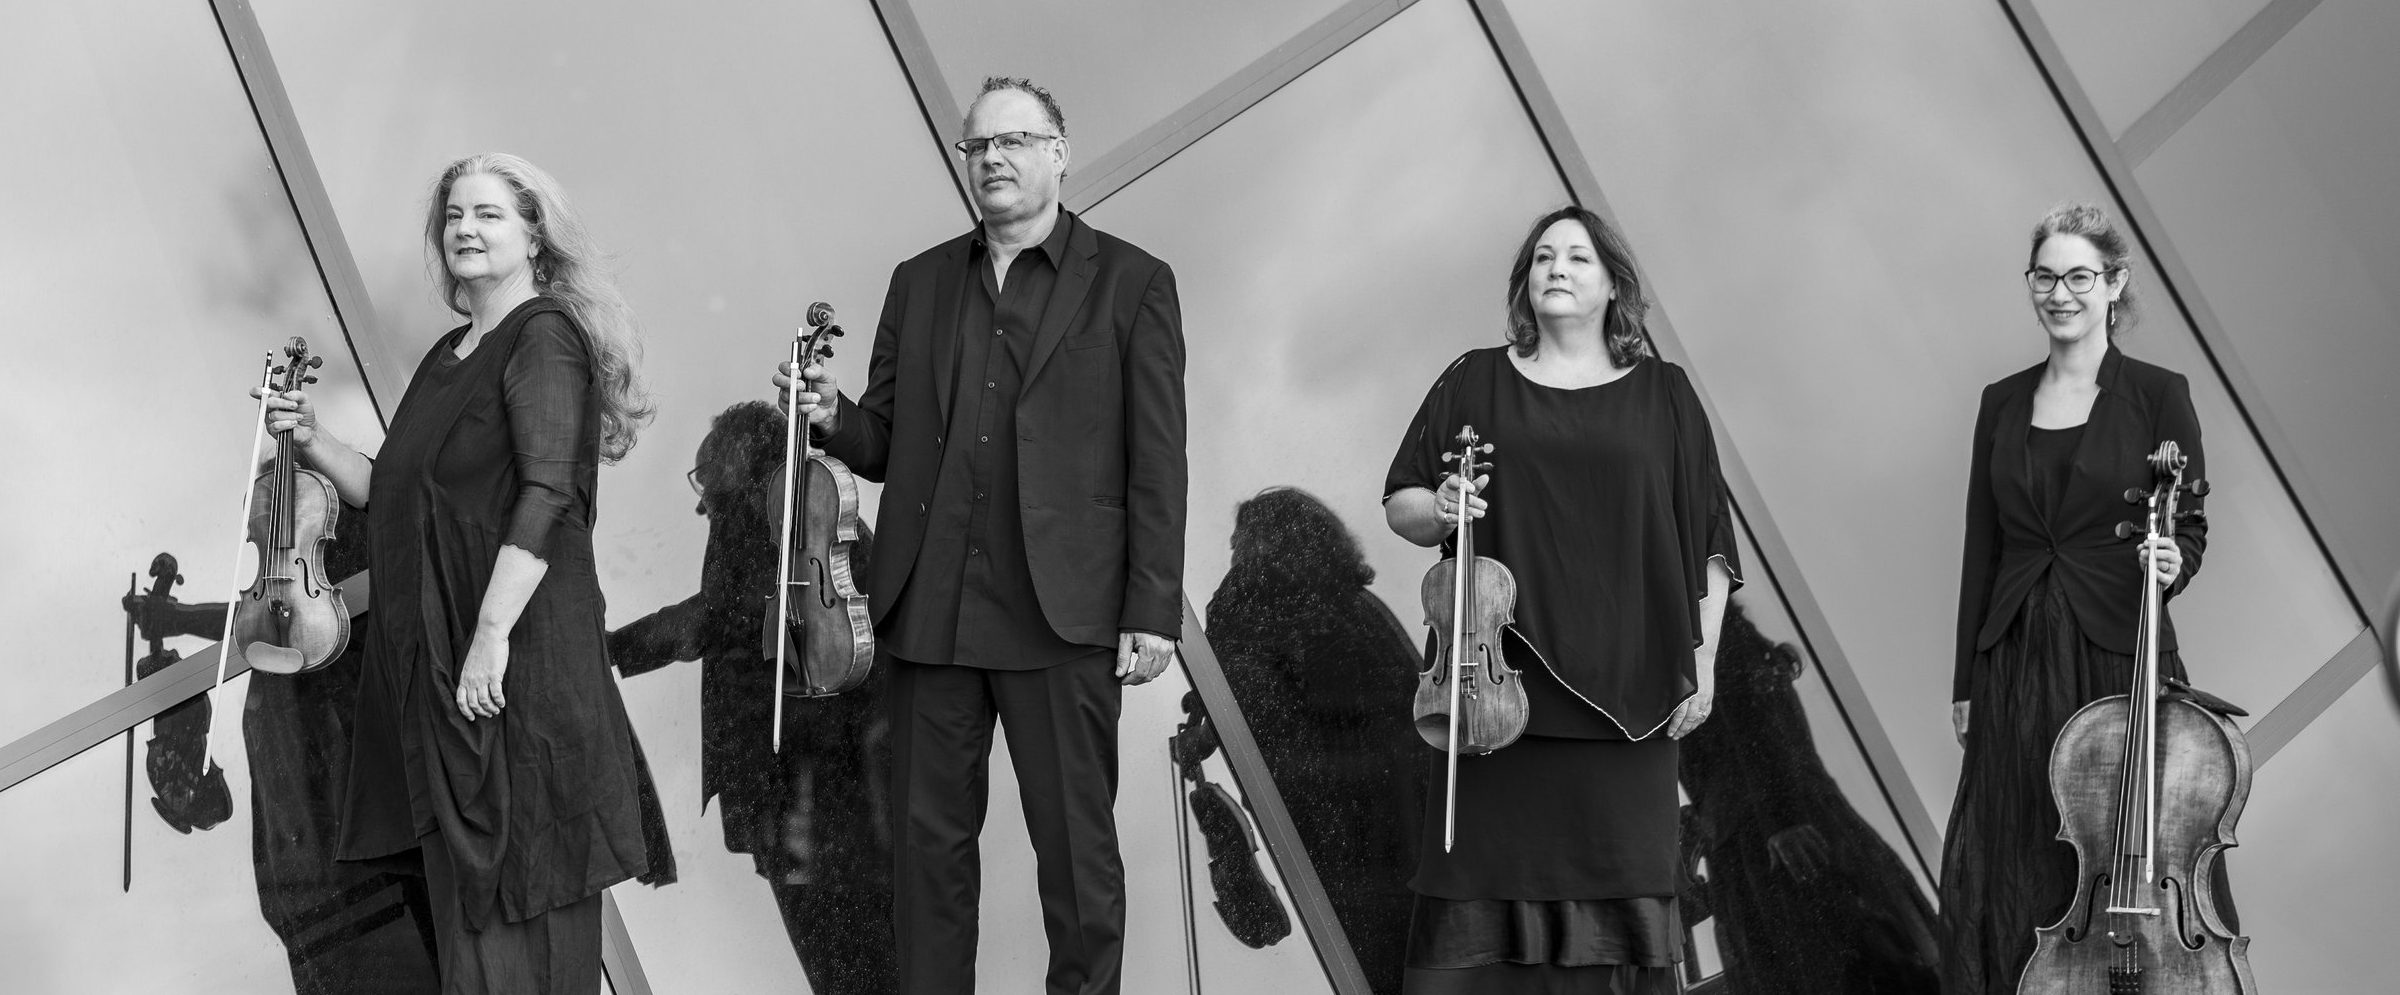 Acacia Quartet + Emile Cantor & Laurentiu Sbarcea